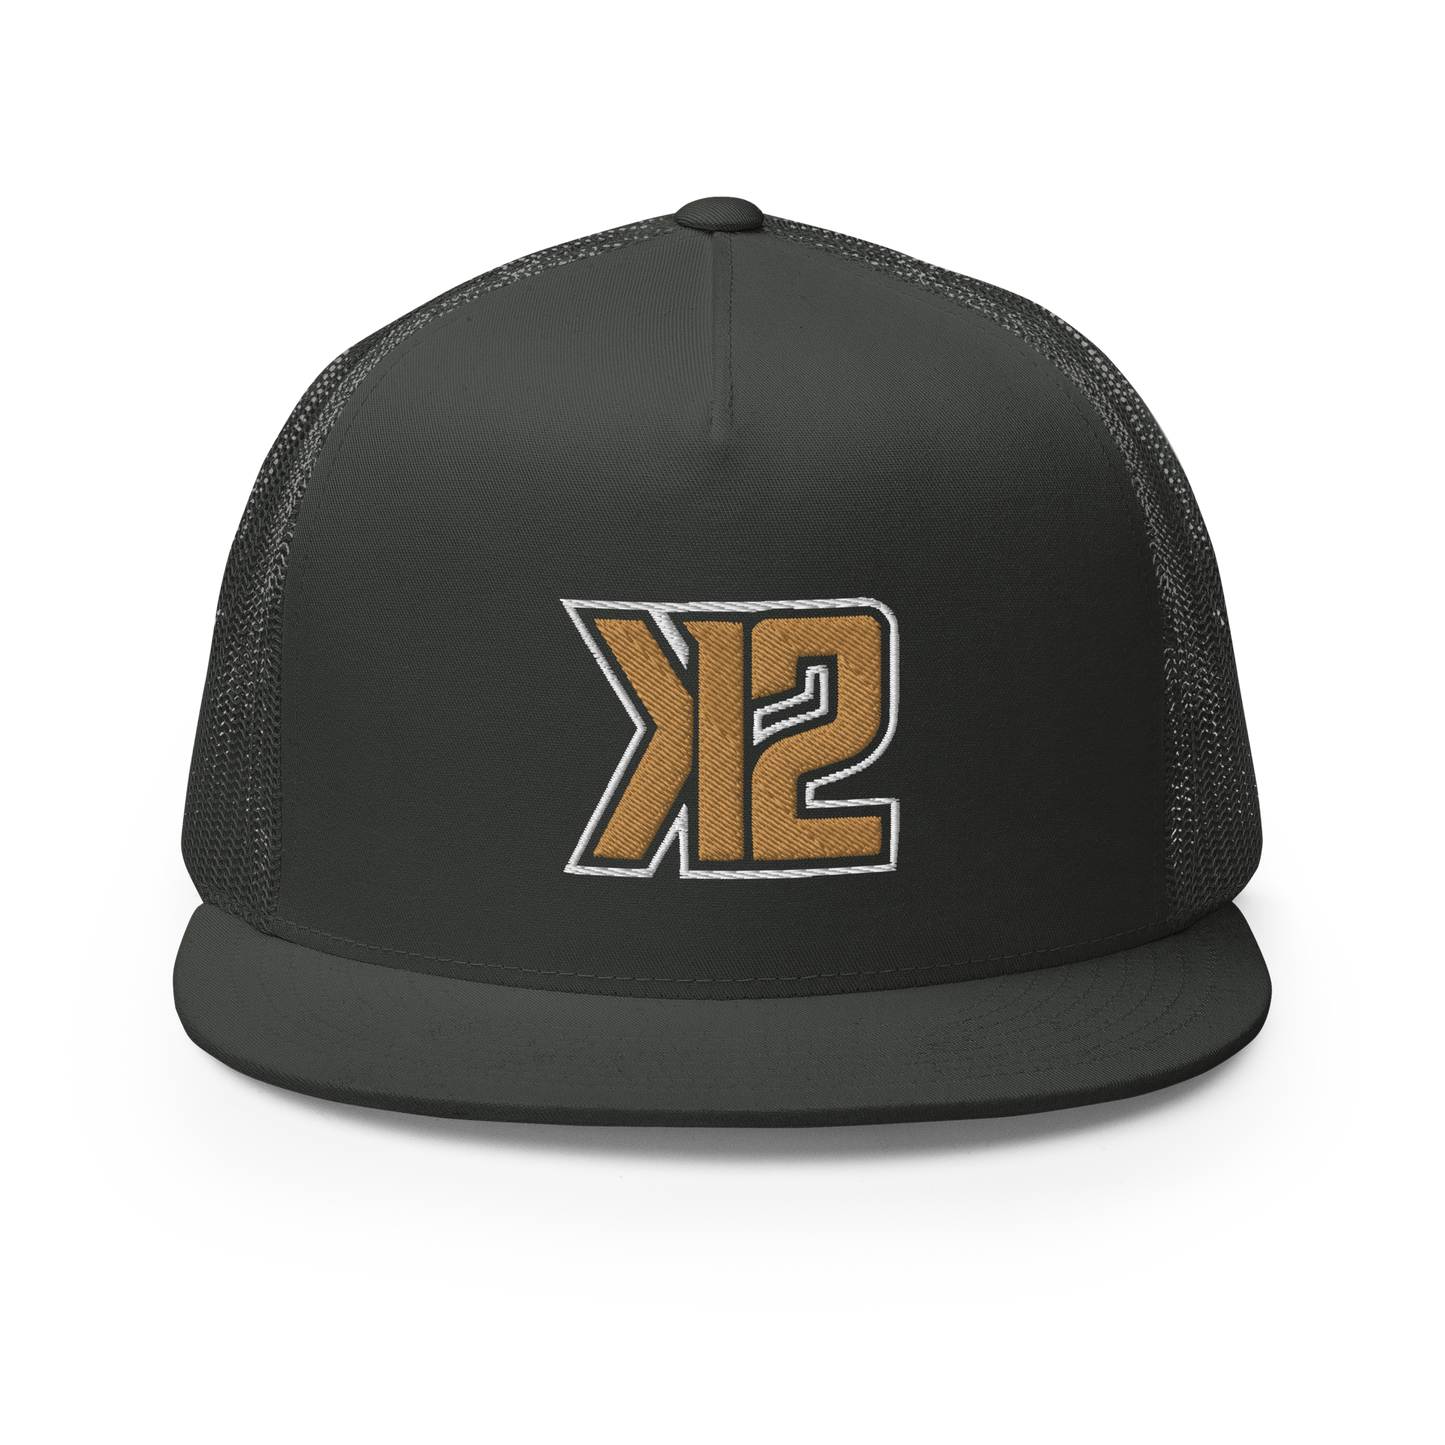 K2 TRUCKER CAP